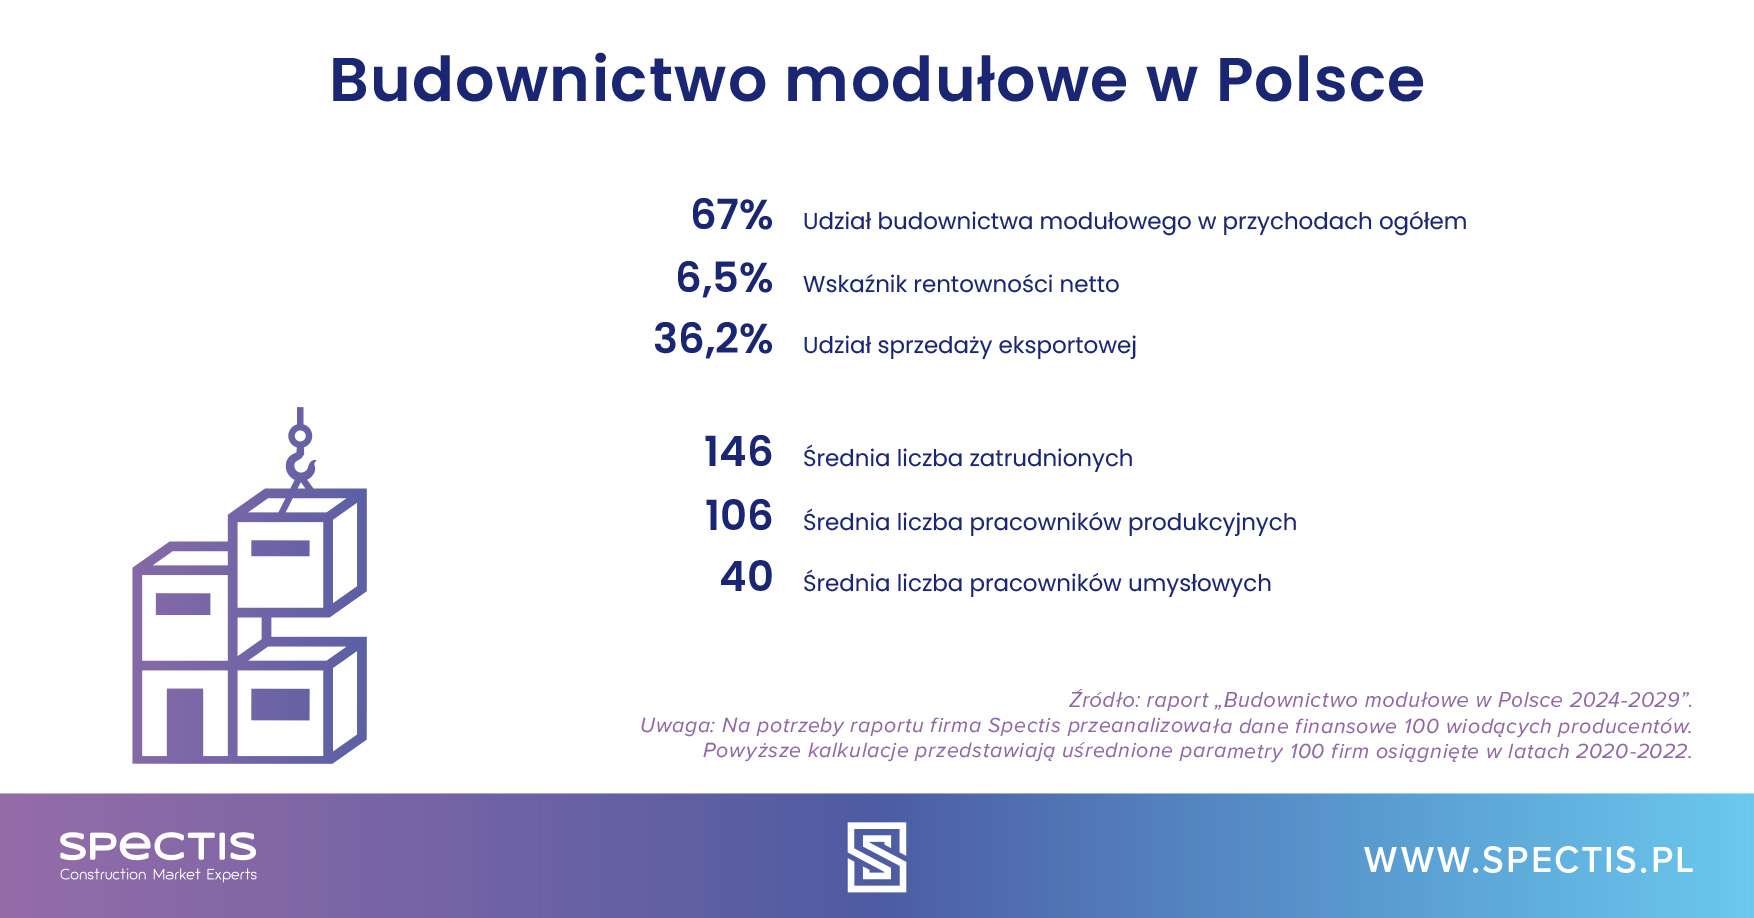 budownictwo-modu-owe-w-polsce-2024-2029-spectis